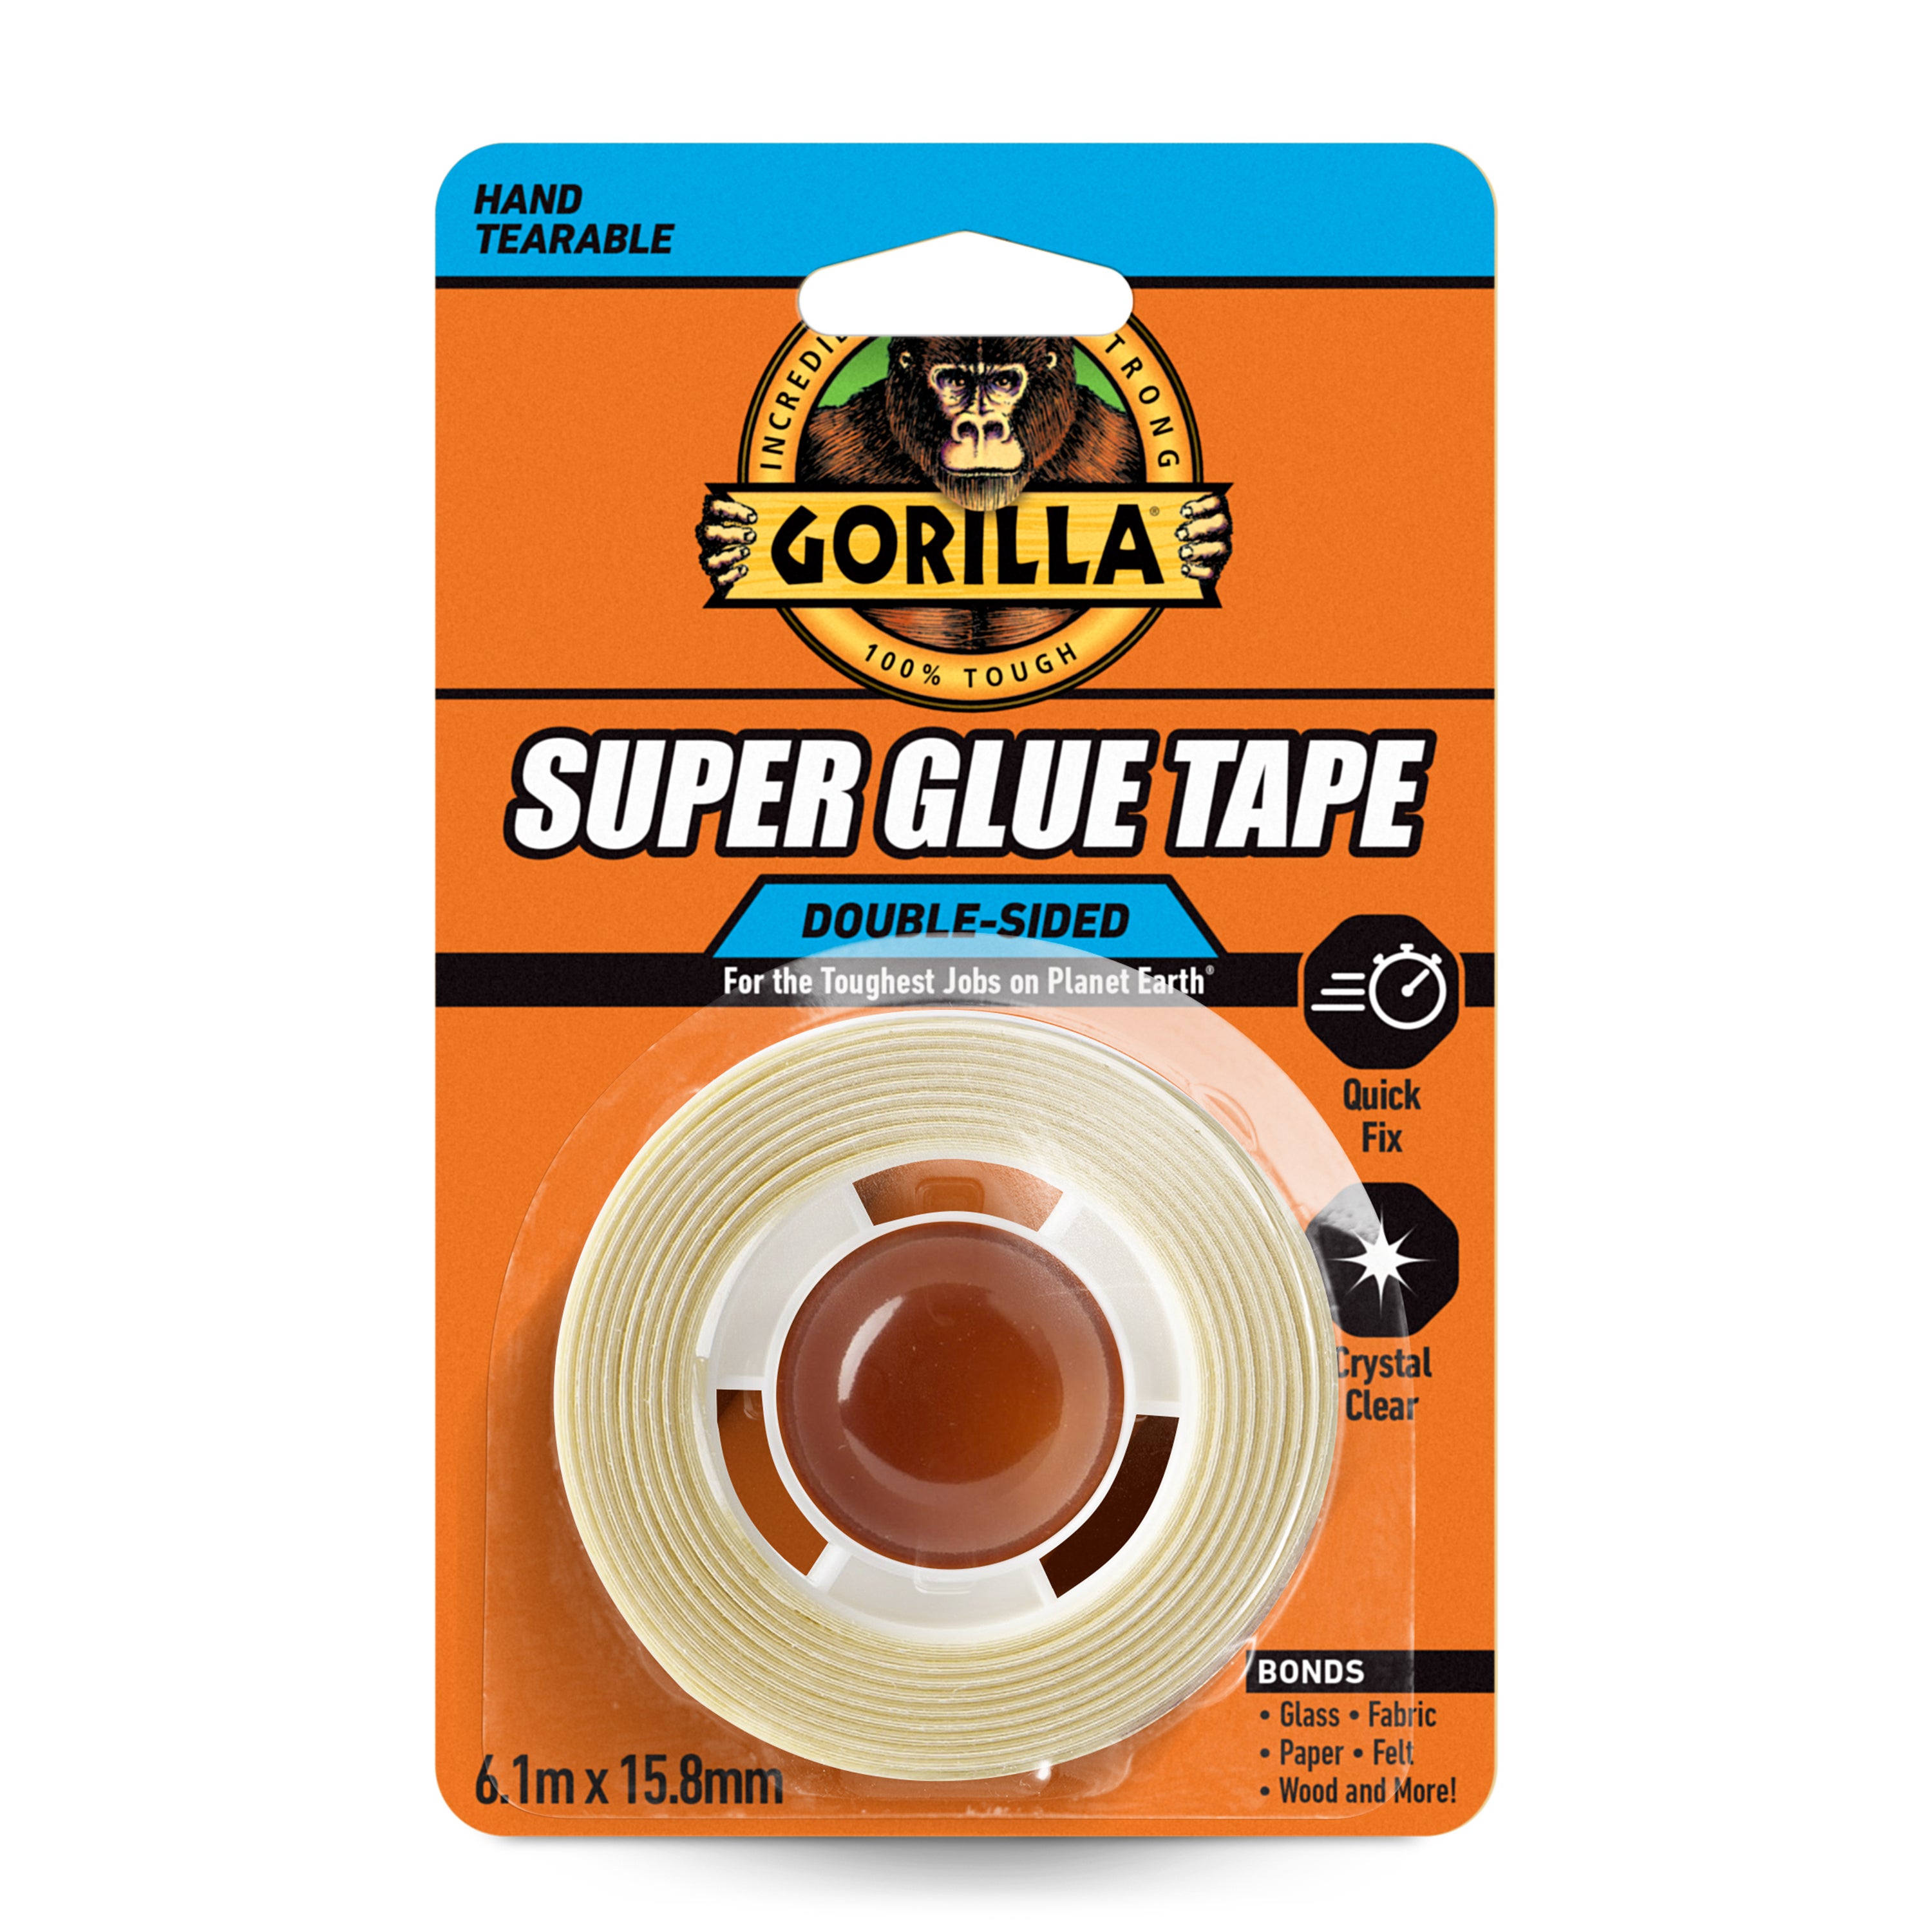 Gorilla Superglue Tape